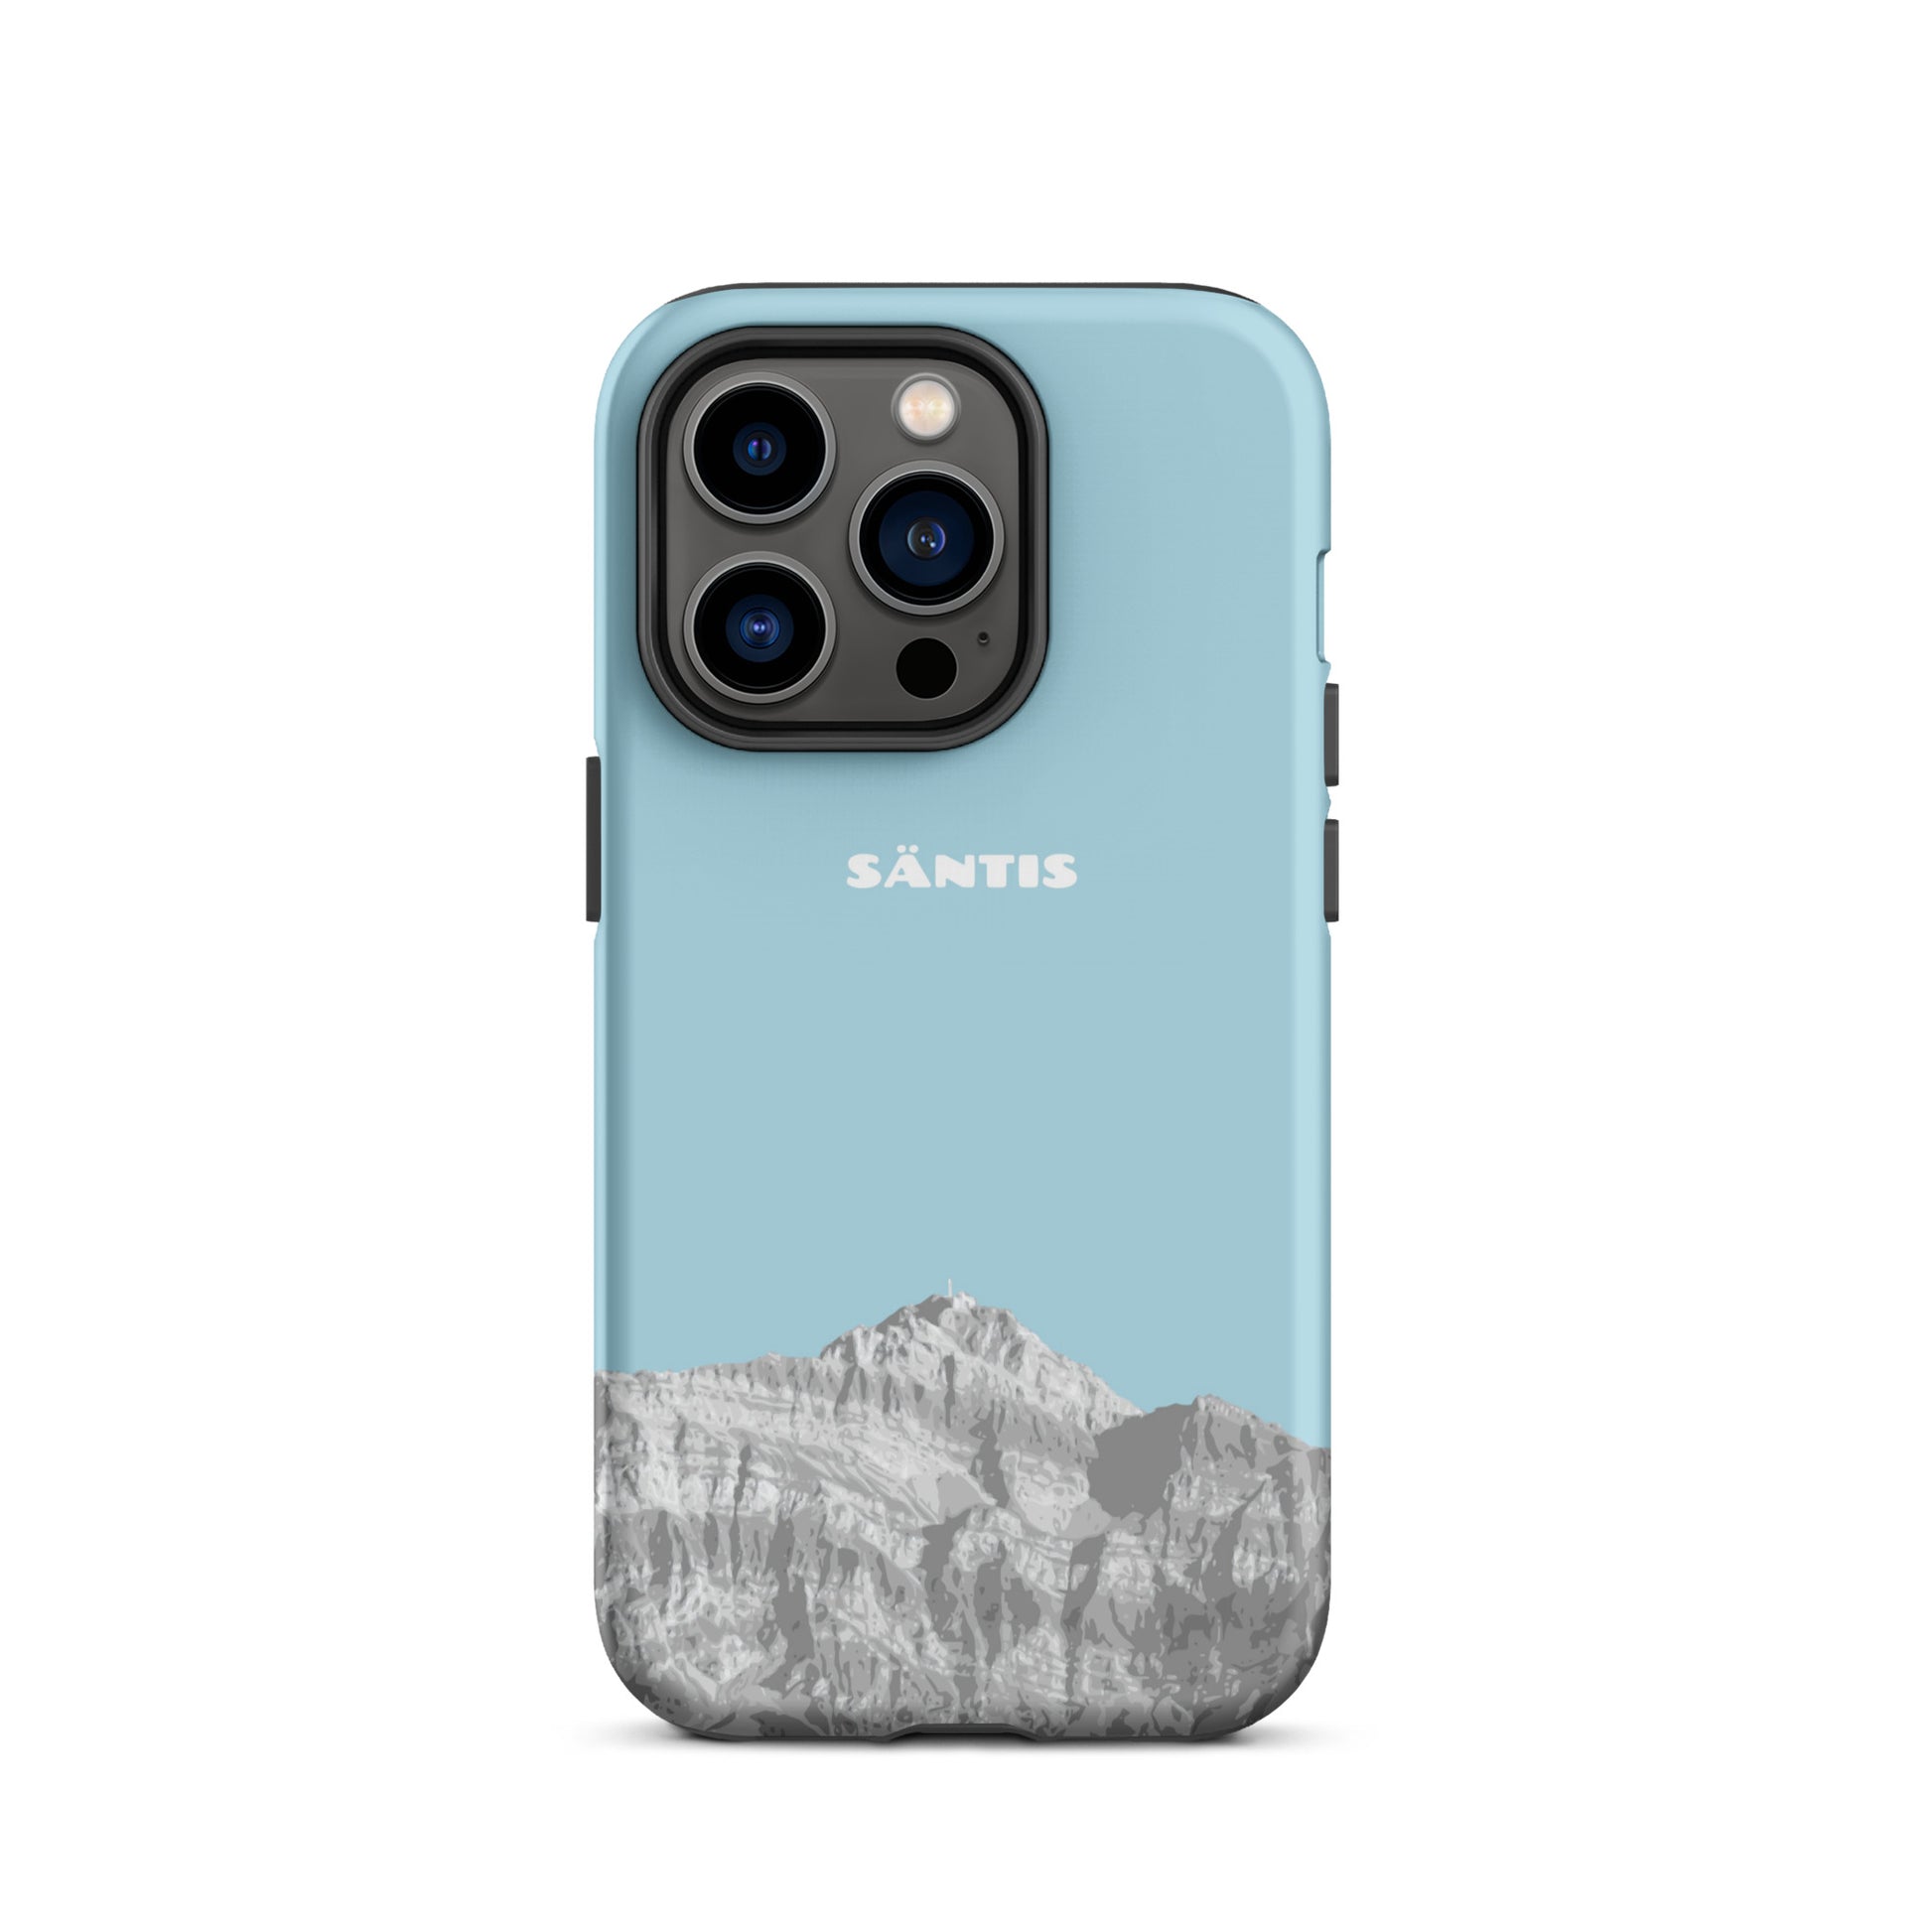 Hülle für das iPhone 14 Pro von Apple in der Farbe Hellblau, dass den Säntis im Alpstein zeigt.